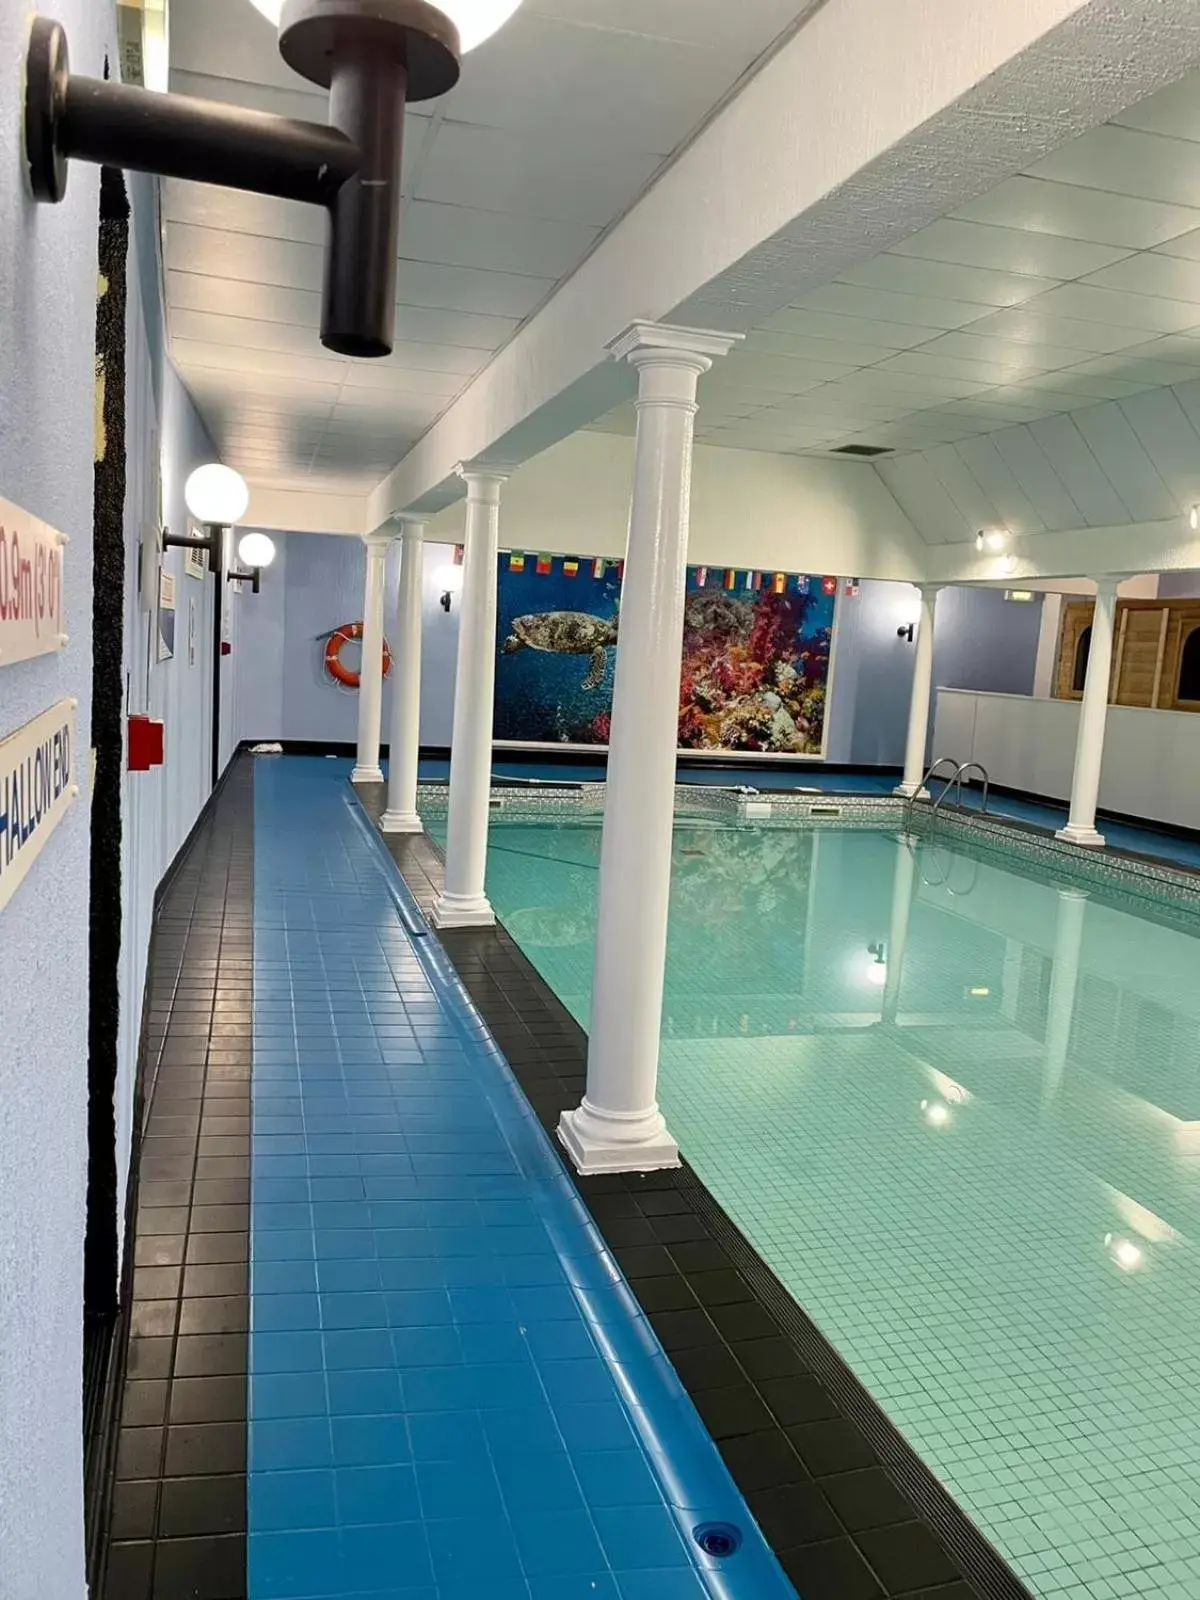 Swimming Pool in The Osborne Hotel